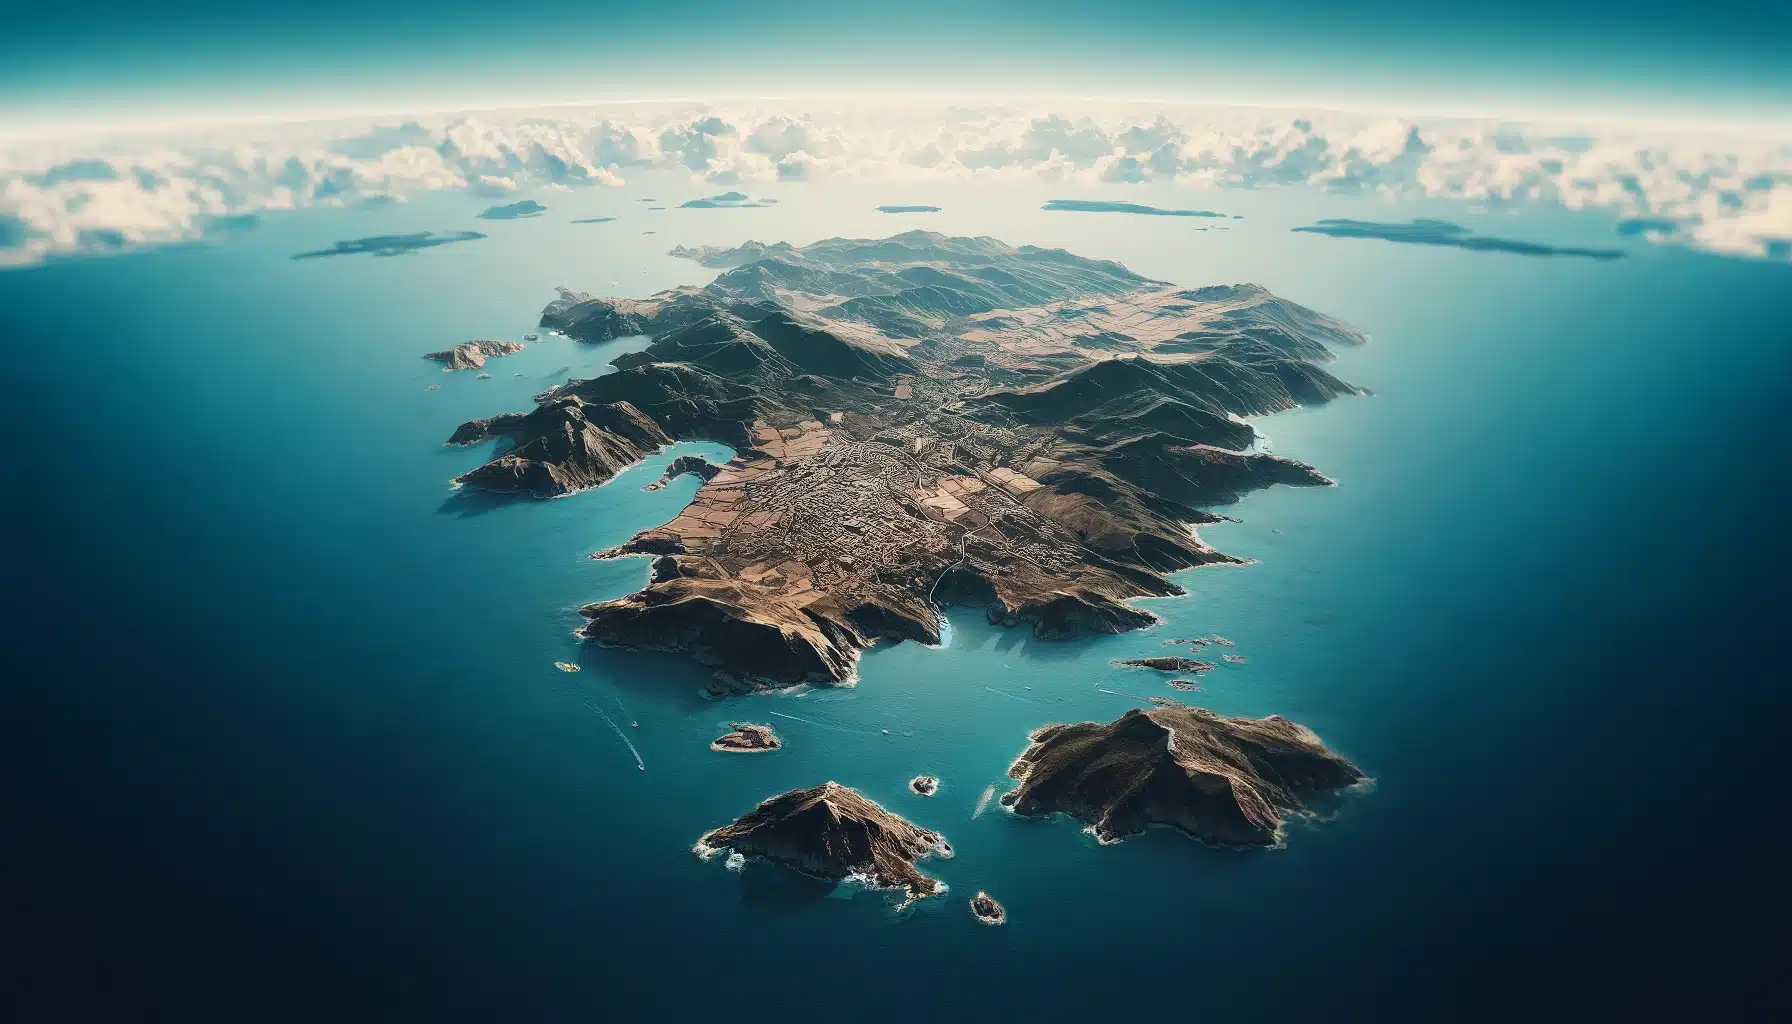 Vue aérienne de la Corse avec la mer en arrière-plan, symbolisant la situation géographique et la spécificité de la pratique médicale.